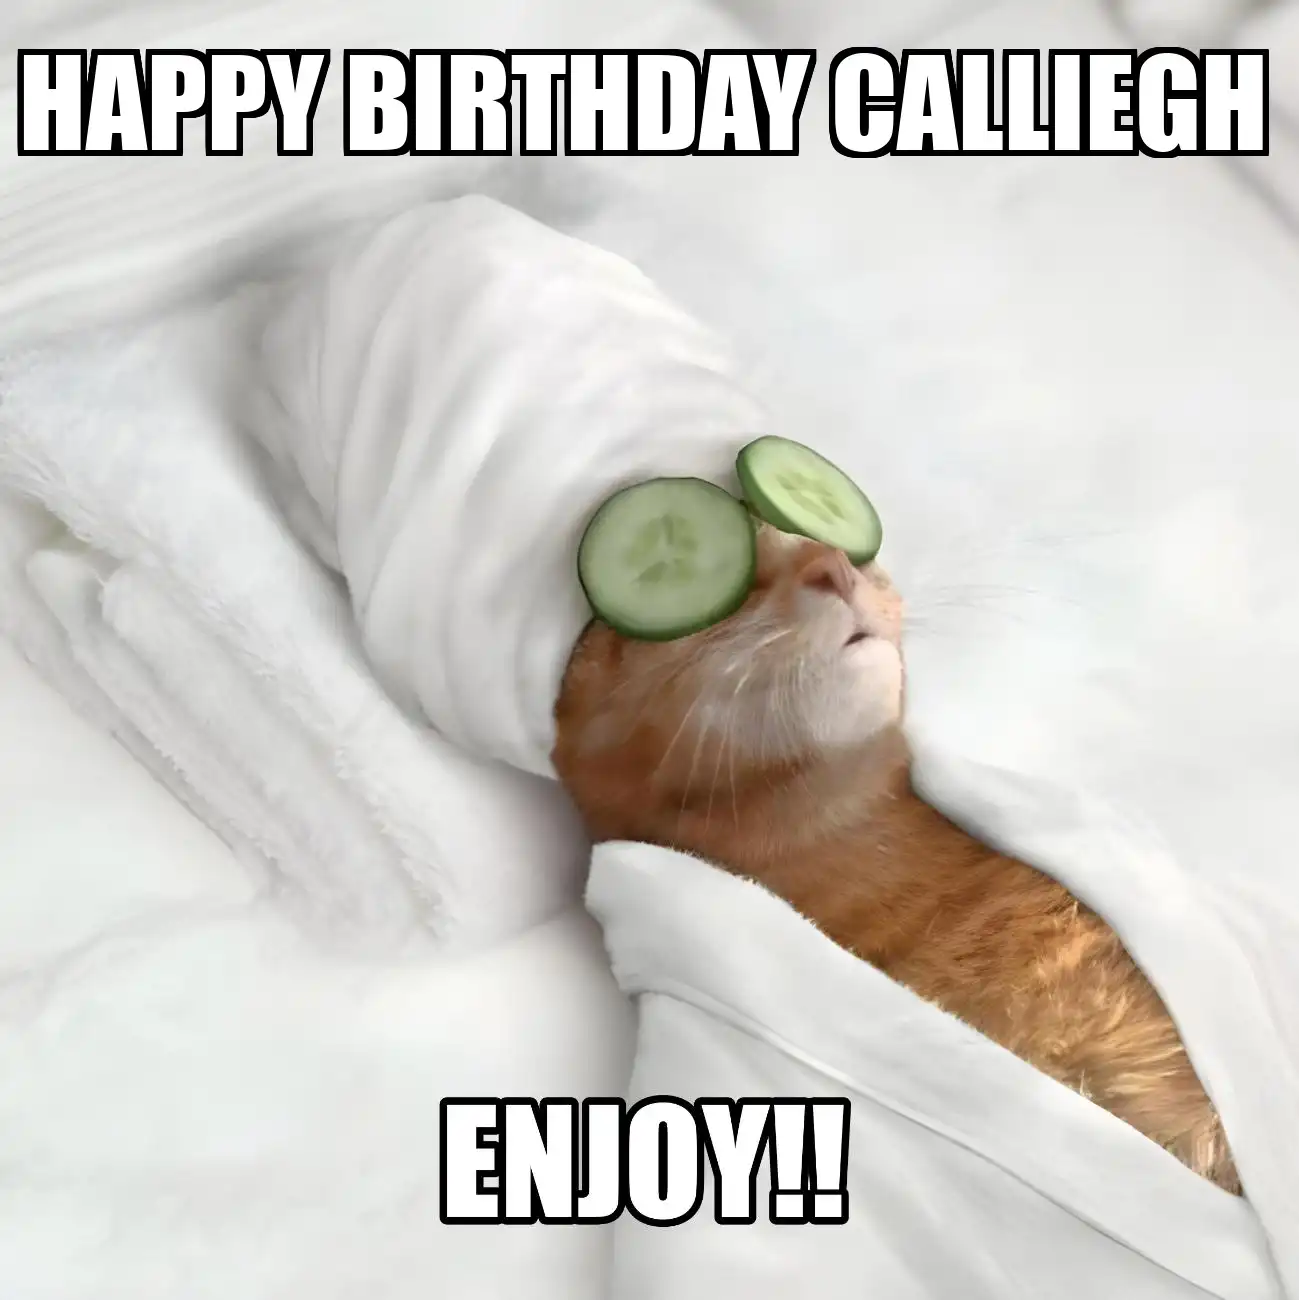 Happy Birthday Calliegh Enjoy Cat Meme